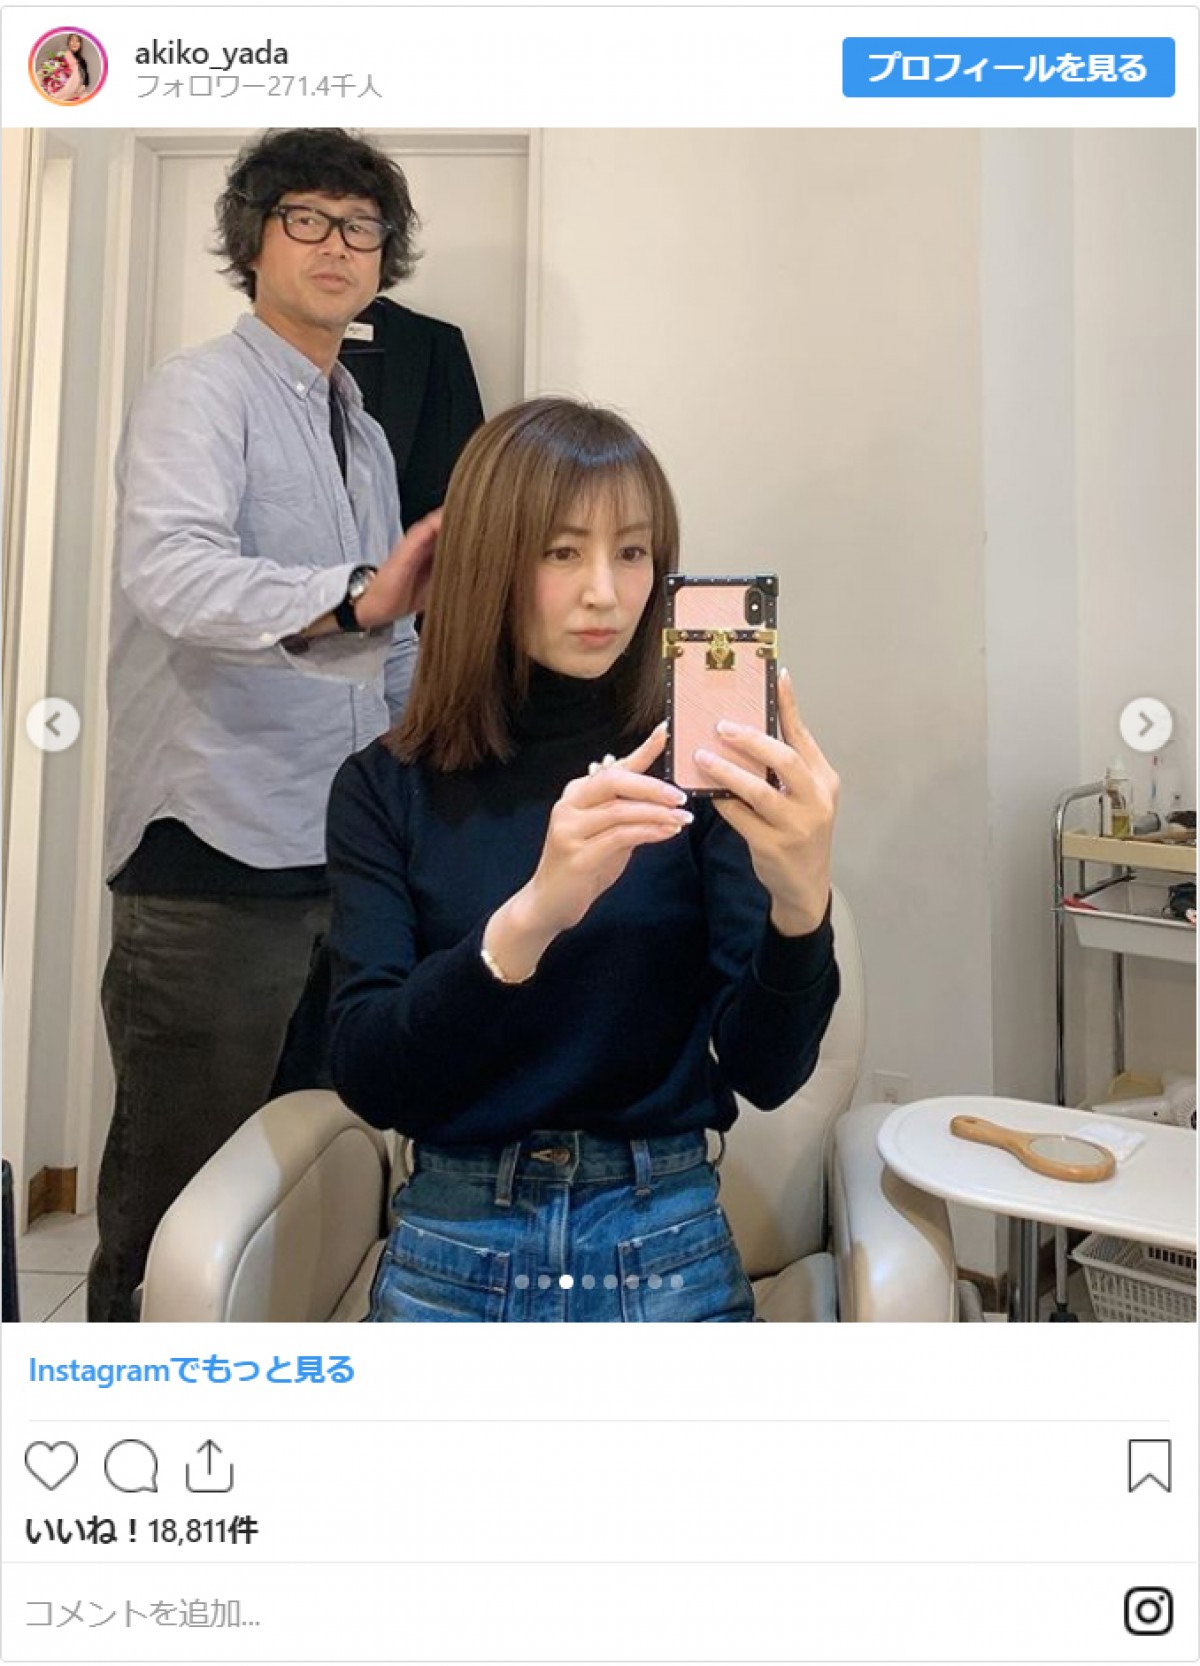 矢田亜希子、17歳の写真公開で反響「美少女」「大人っぽすぎる」